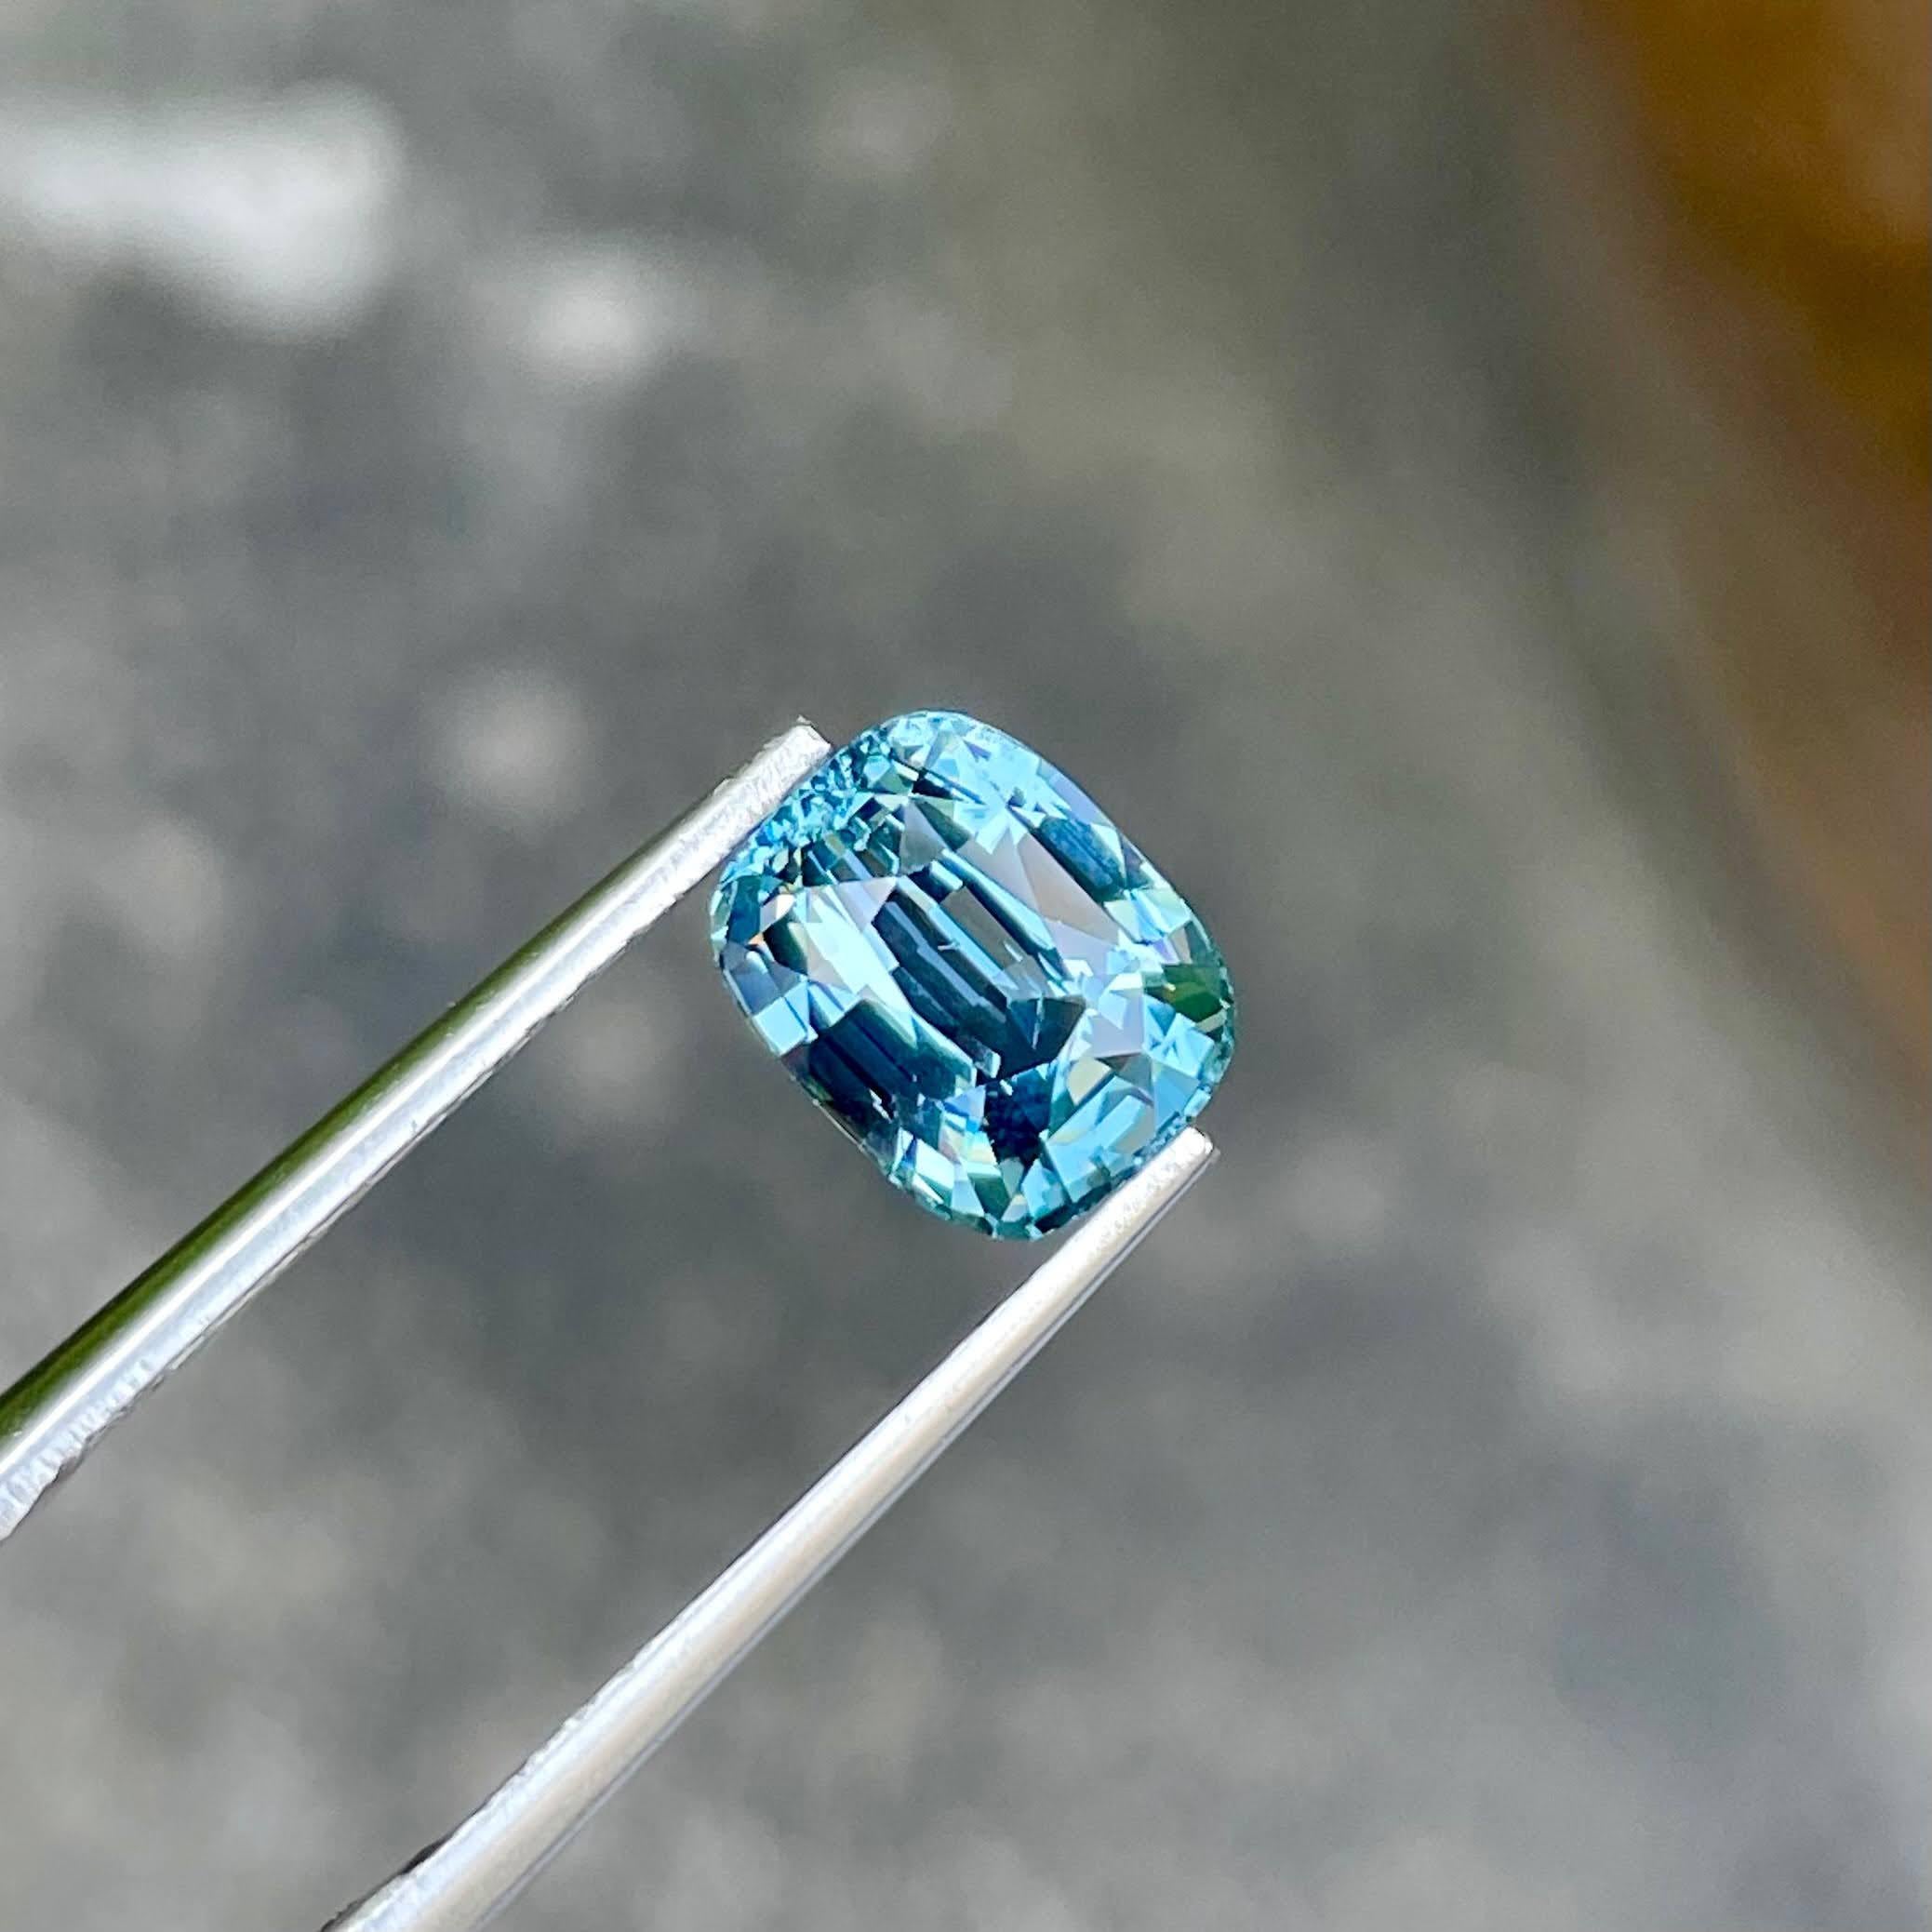 Poids 2,55 carats 
Dim 8.45x6.7x5.3 mm
Traitement Aucun
Clarté VVS
Origine Tanzanie
Coussin de forme
Coussin de marche coupé




La pierre Vivid Blue Spinel de 2,55 carats est un exemple exquis de la beauté naturelle tanzanienne. Elle présente une